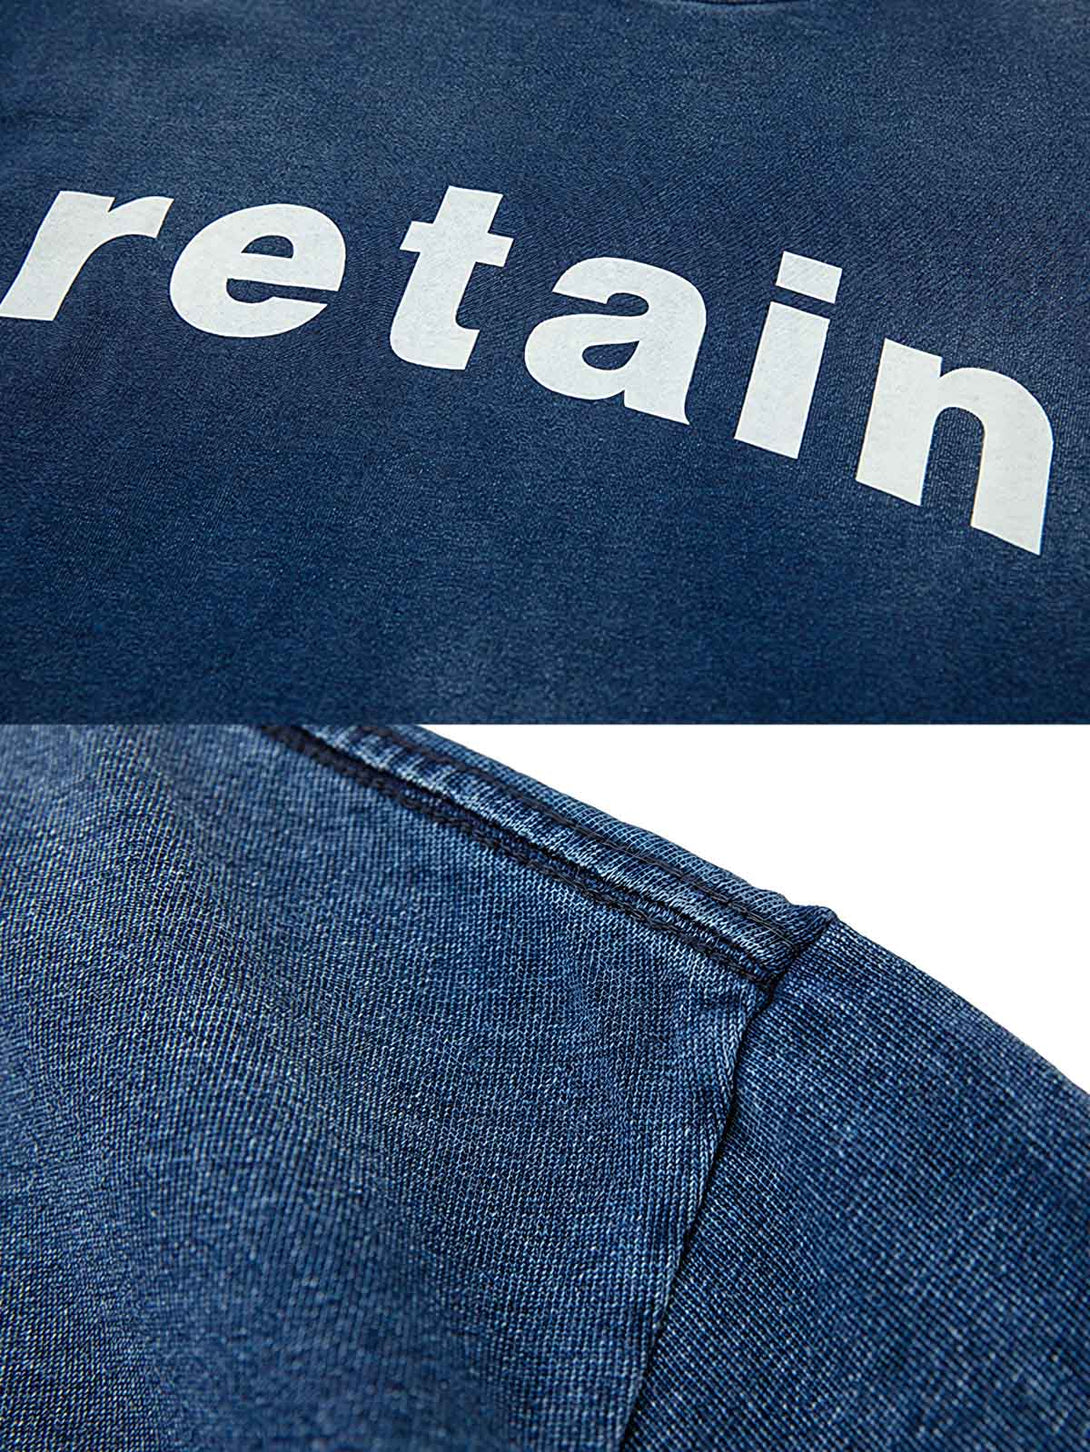 詳細画像: Tシャツの藍染めディテールと「retain」プリントデザイン